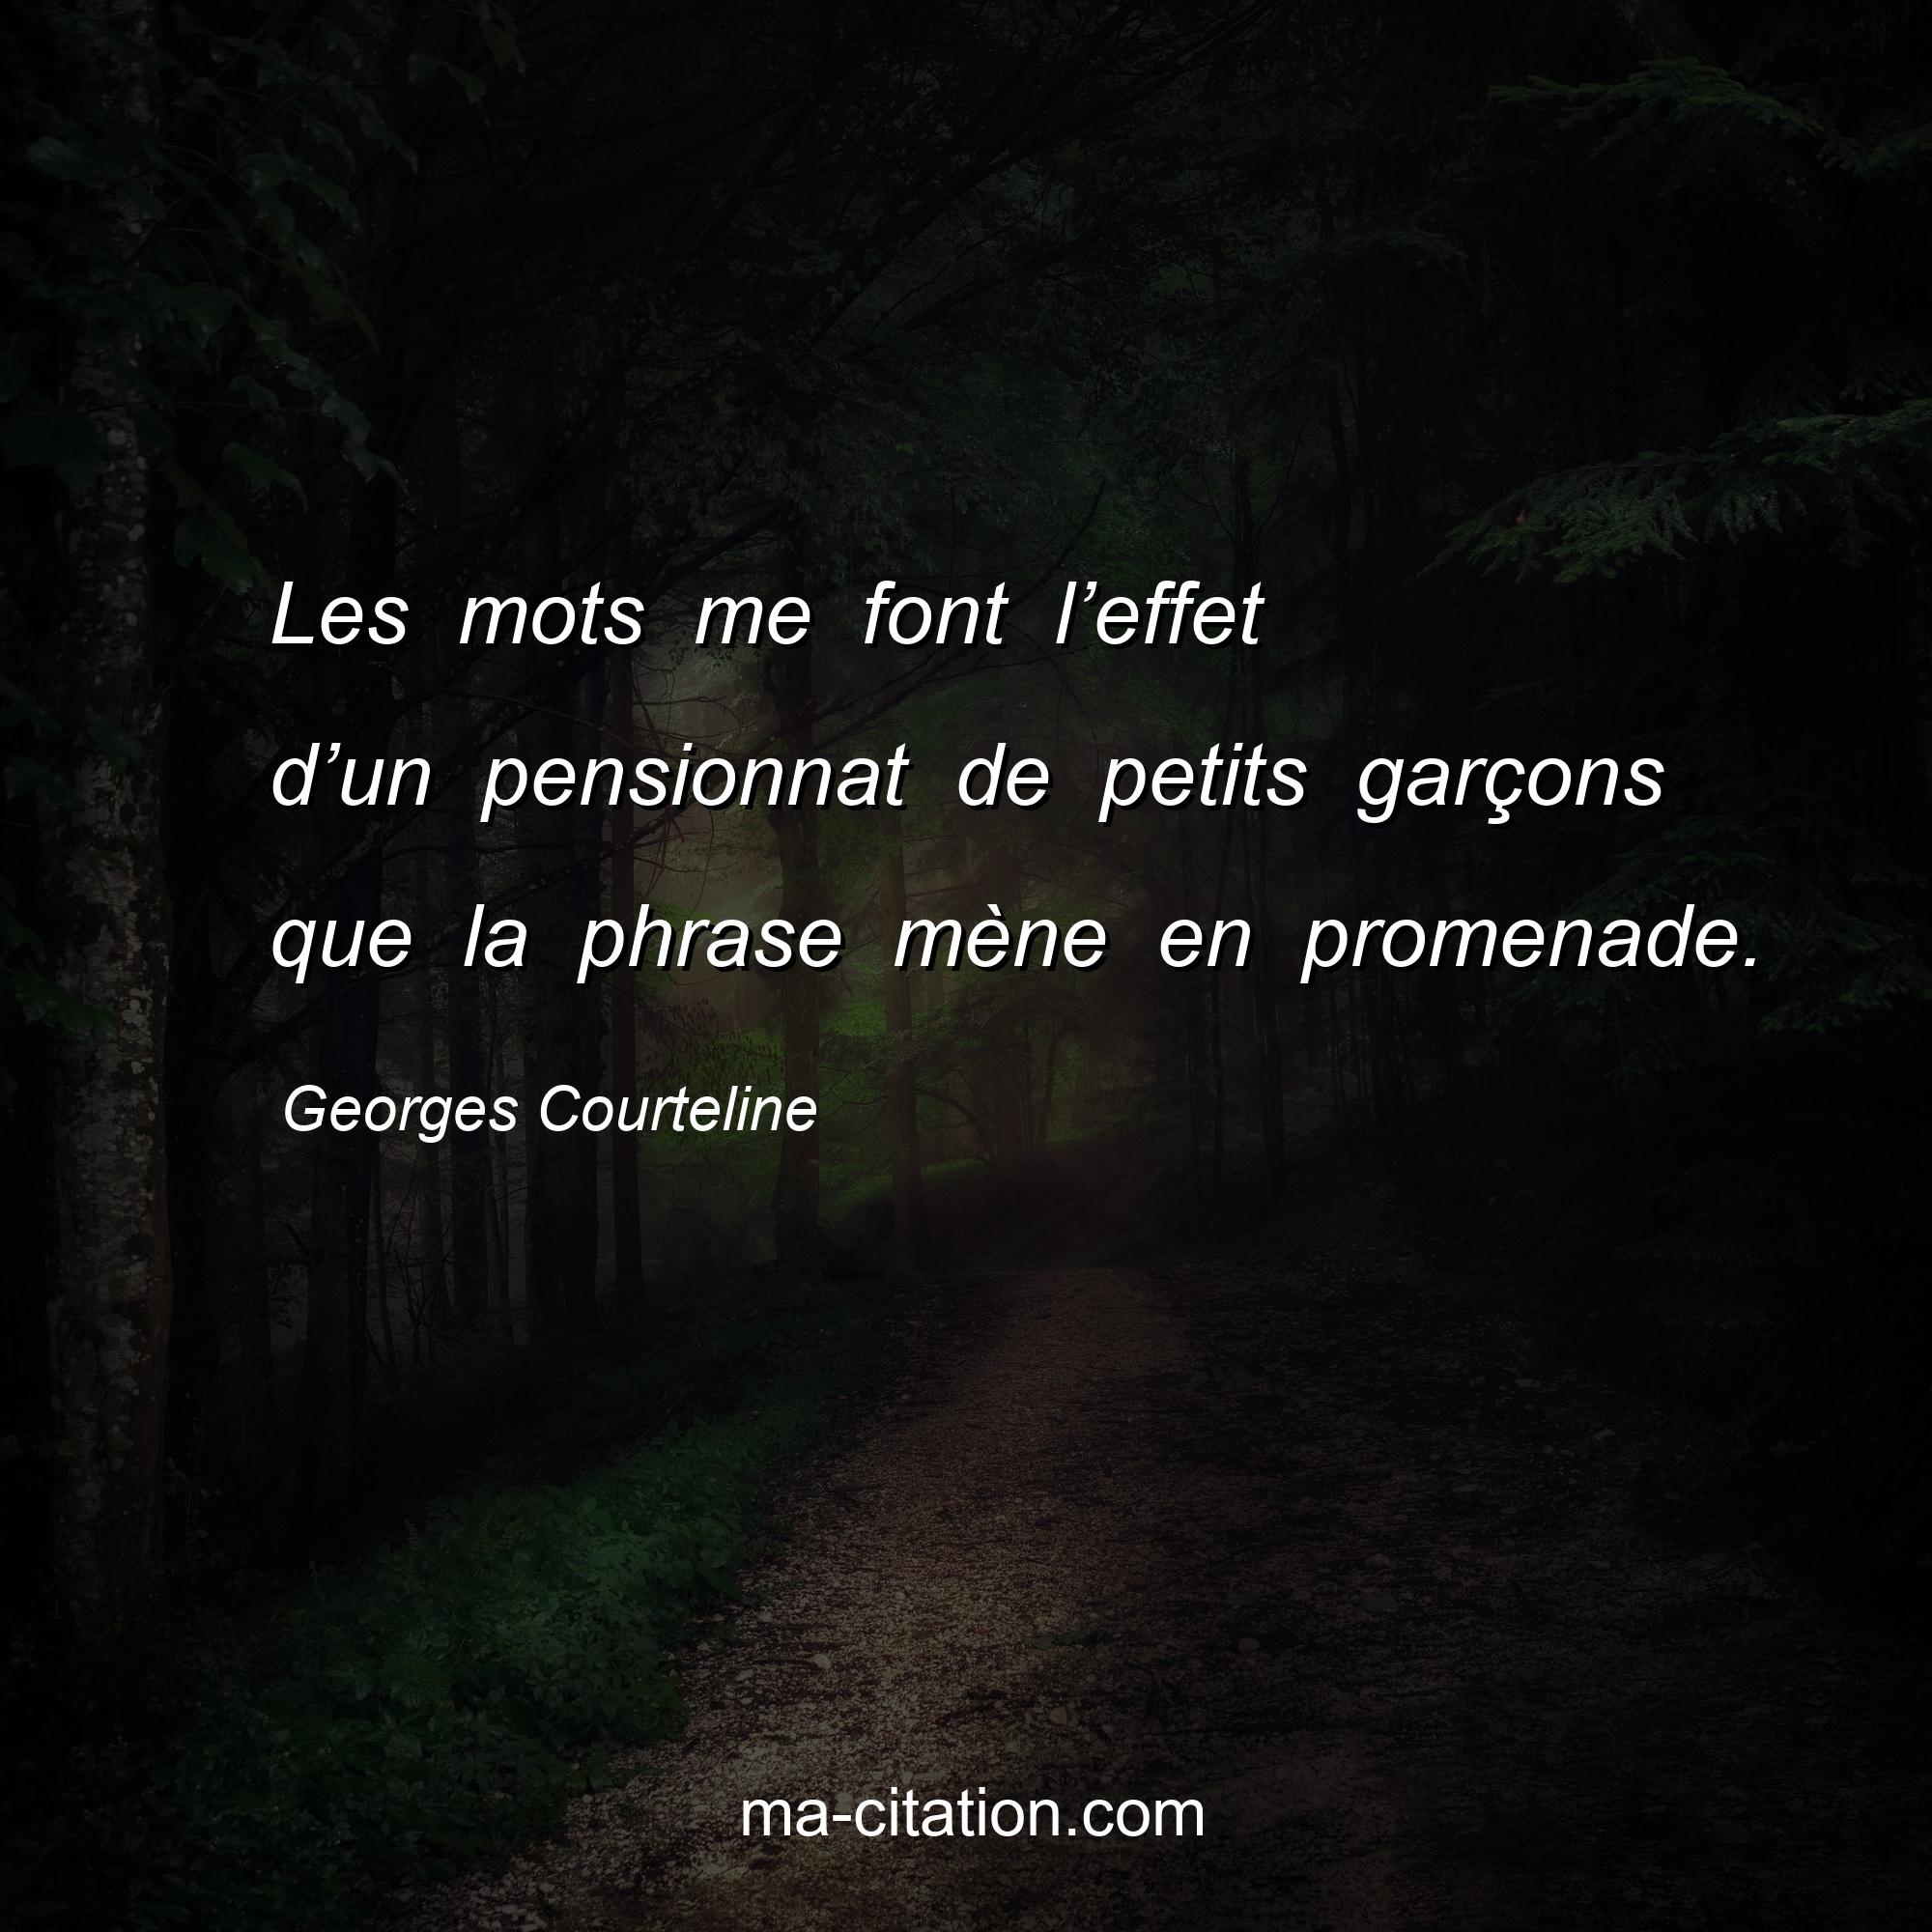 Georges Courteline : Les mots me font l’effet d’un pensionnat de petits garçons que la phrase mène en promenade.